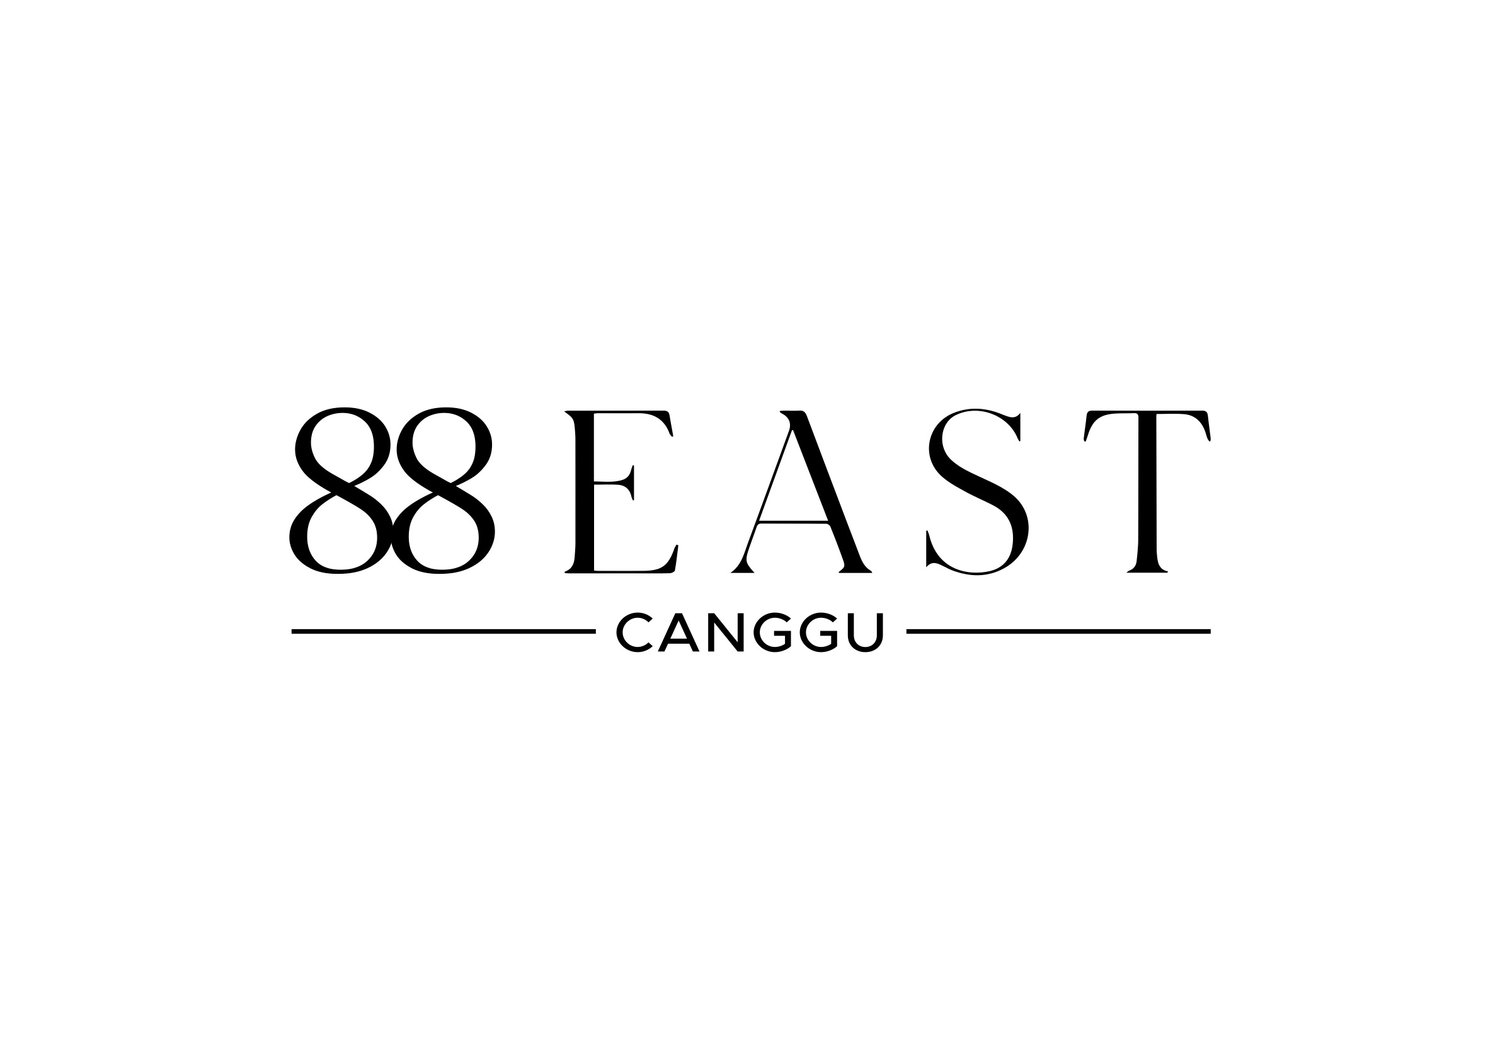 88 EAST